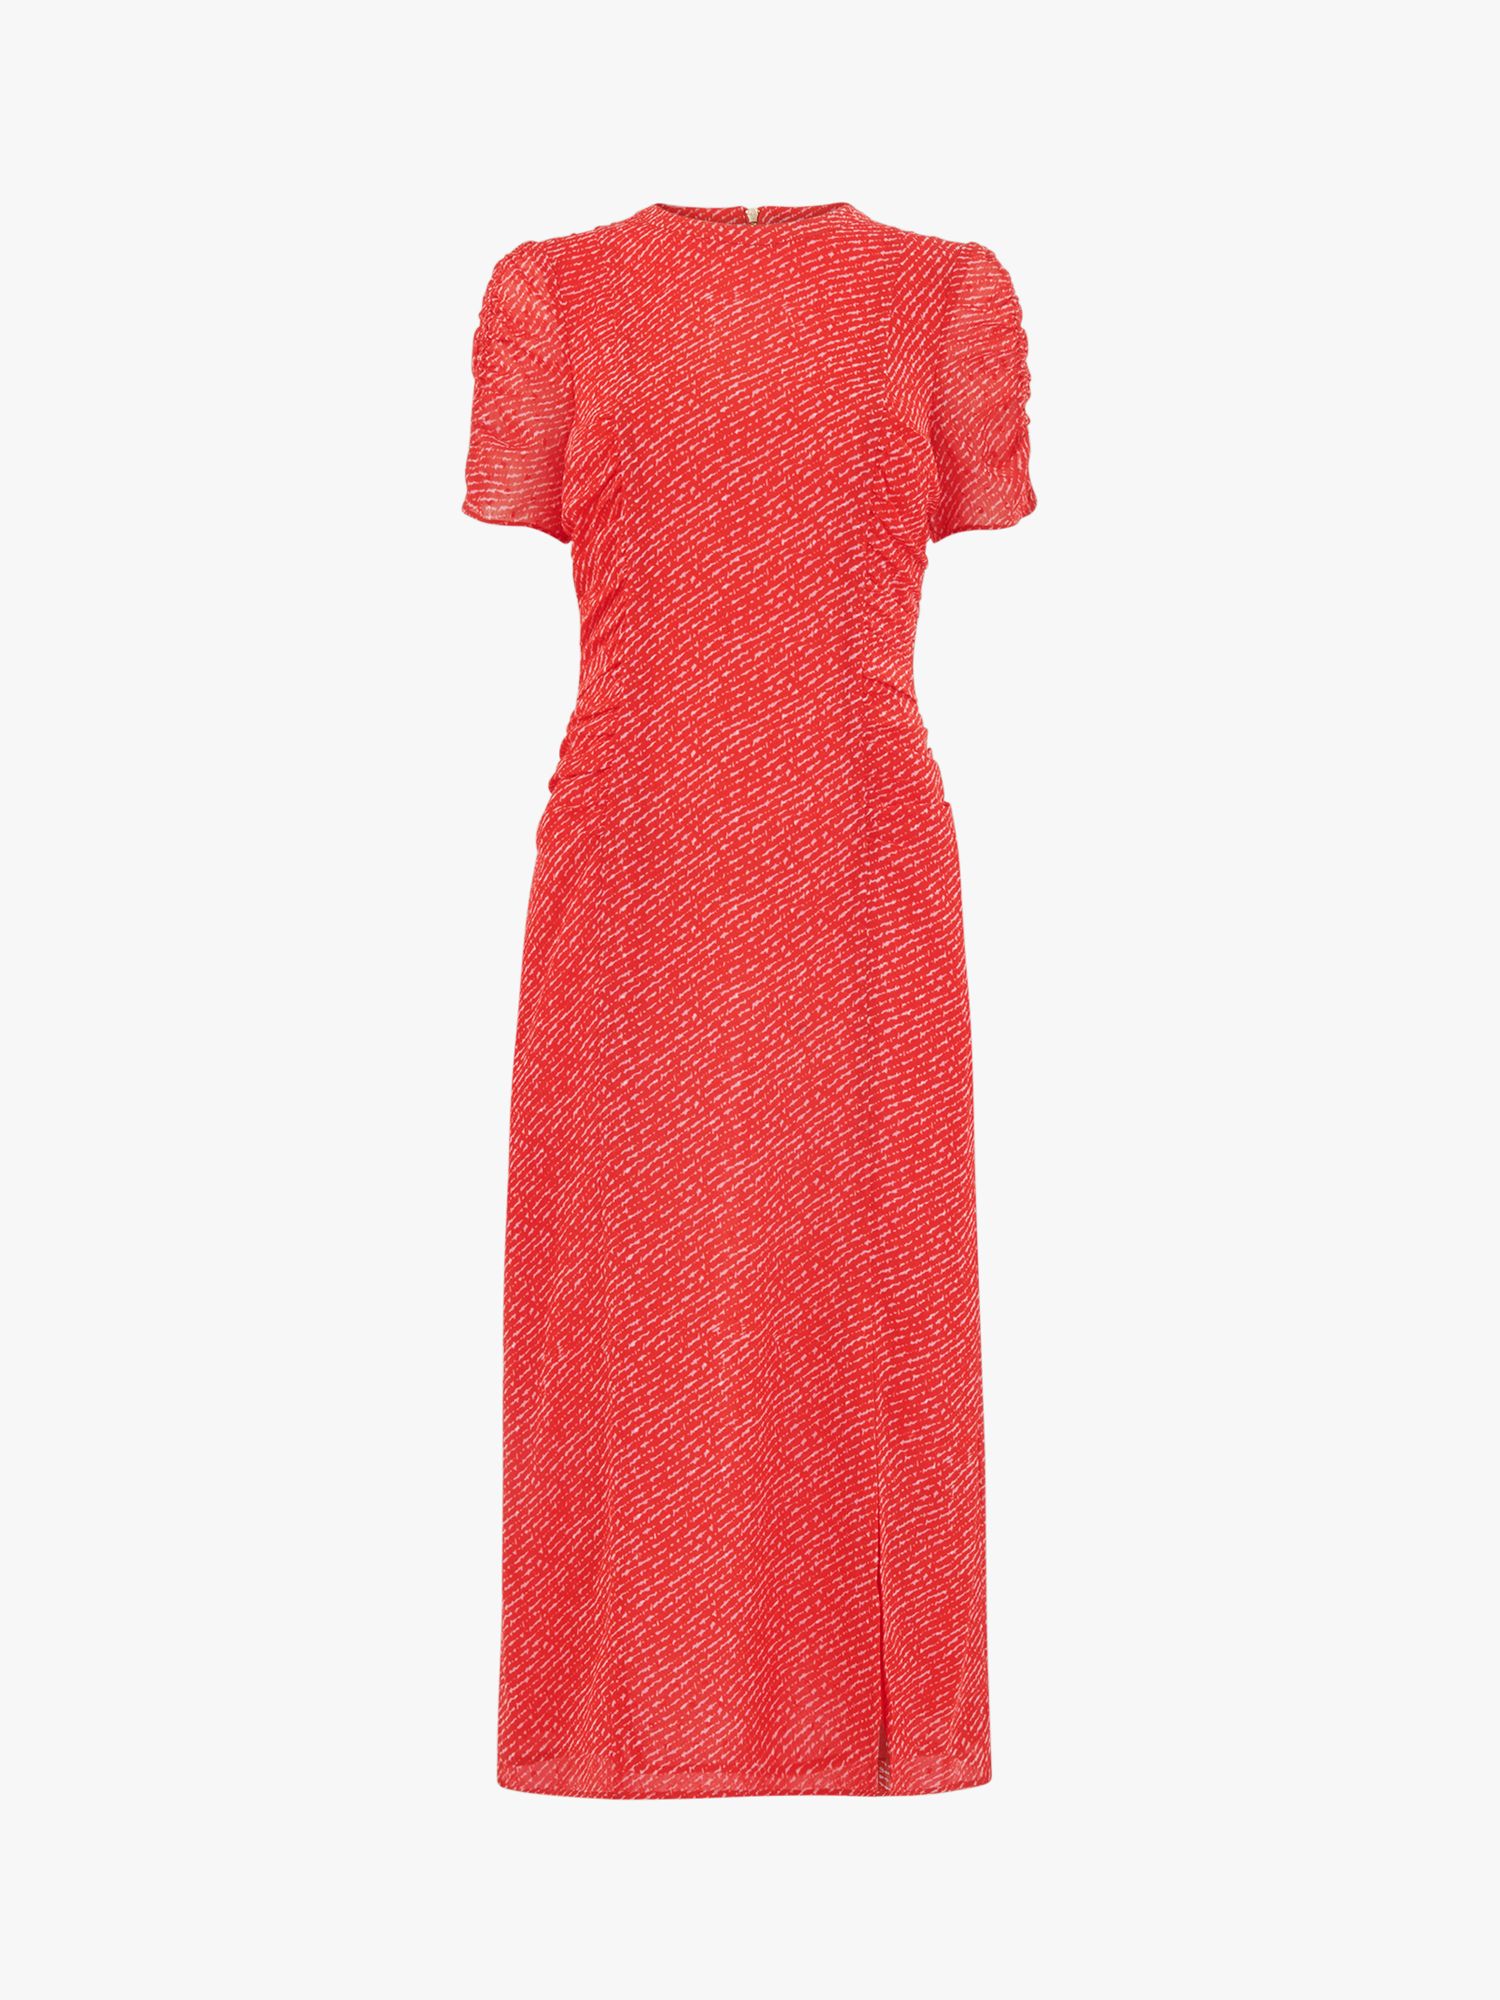 Whistles Diagonal Fleck Print Midi Dobby Dress, Red/Multi, 10